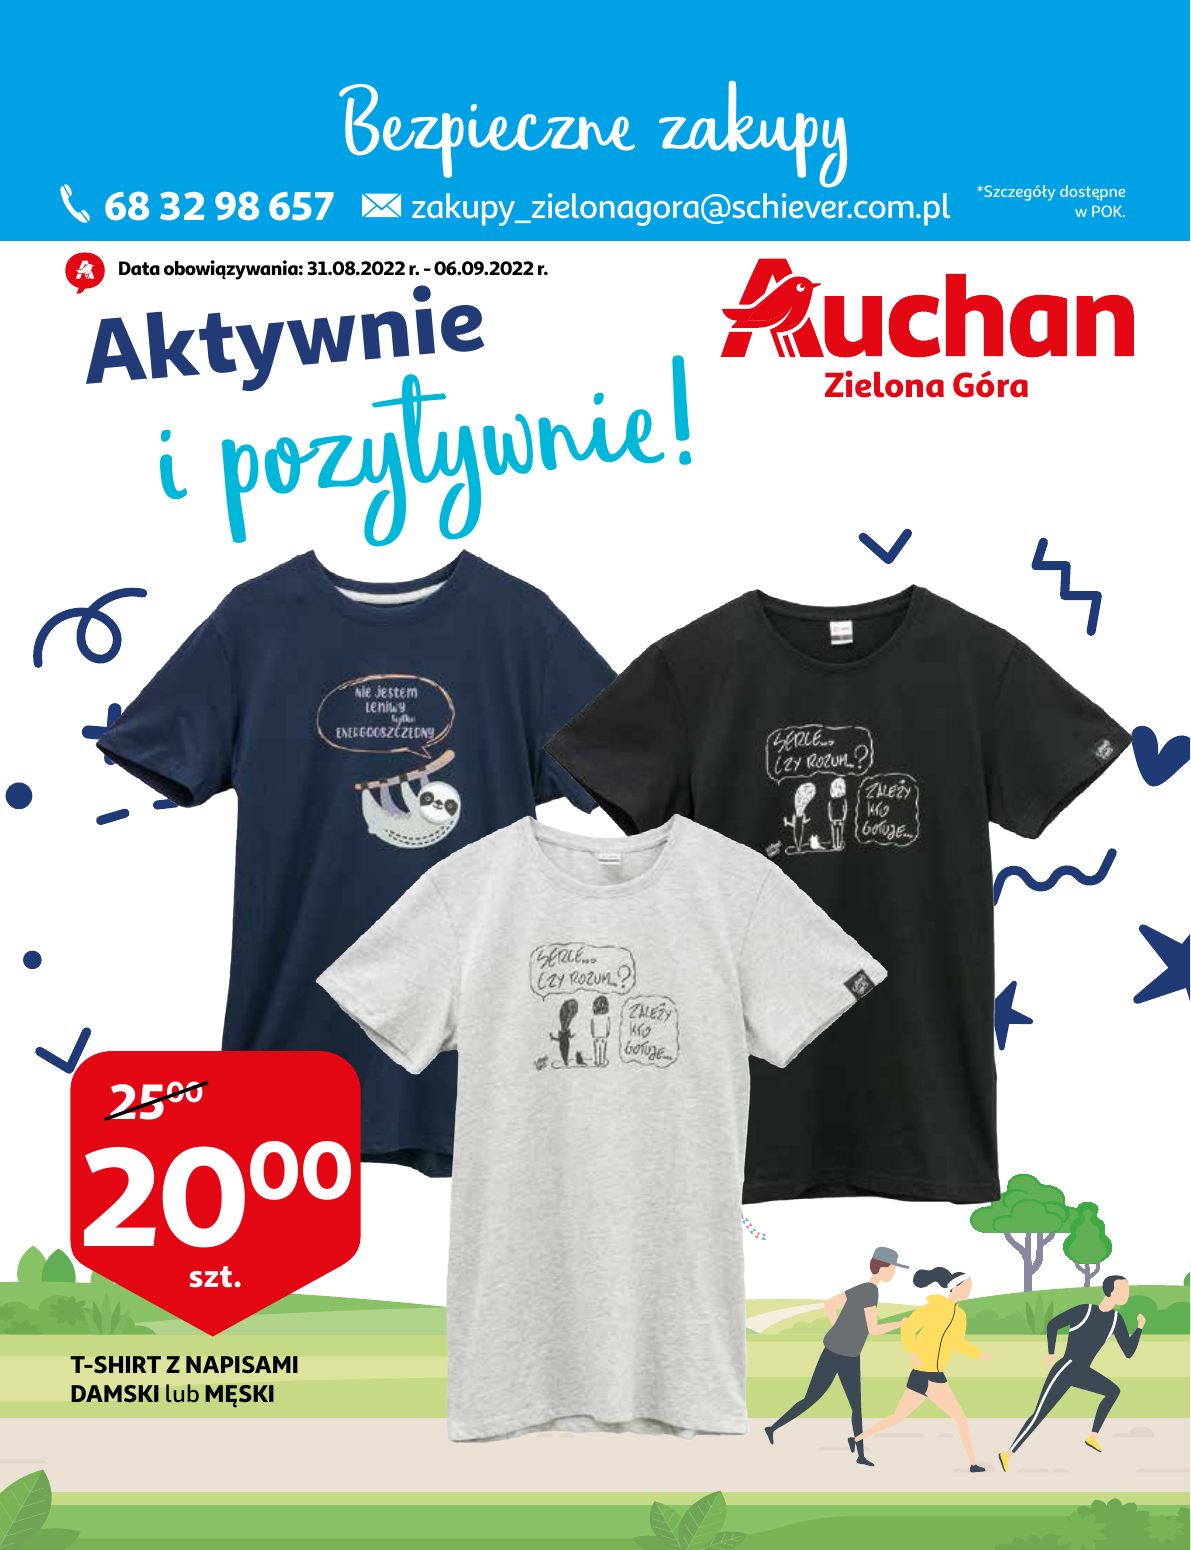 Gazetka Auchan od 31.08.2022 do 06.09.2022